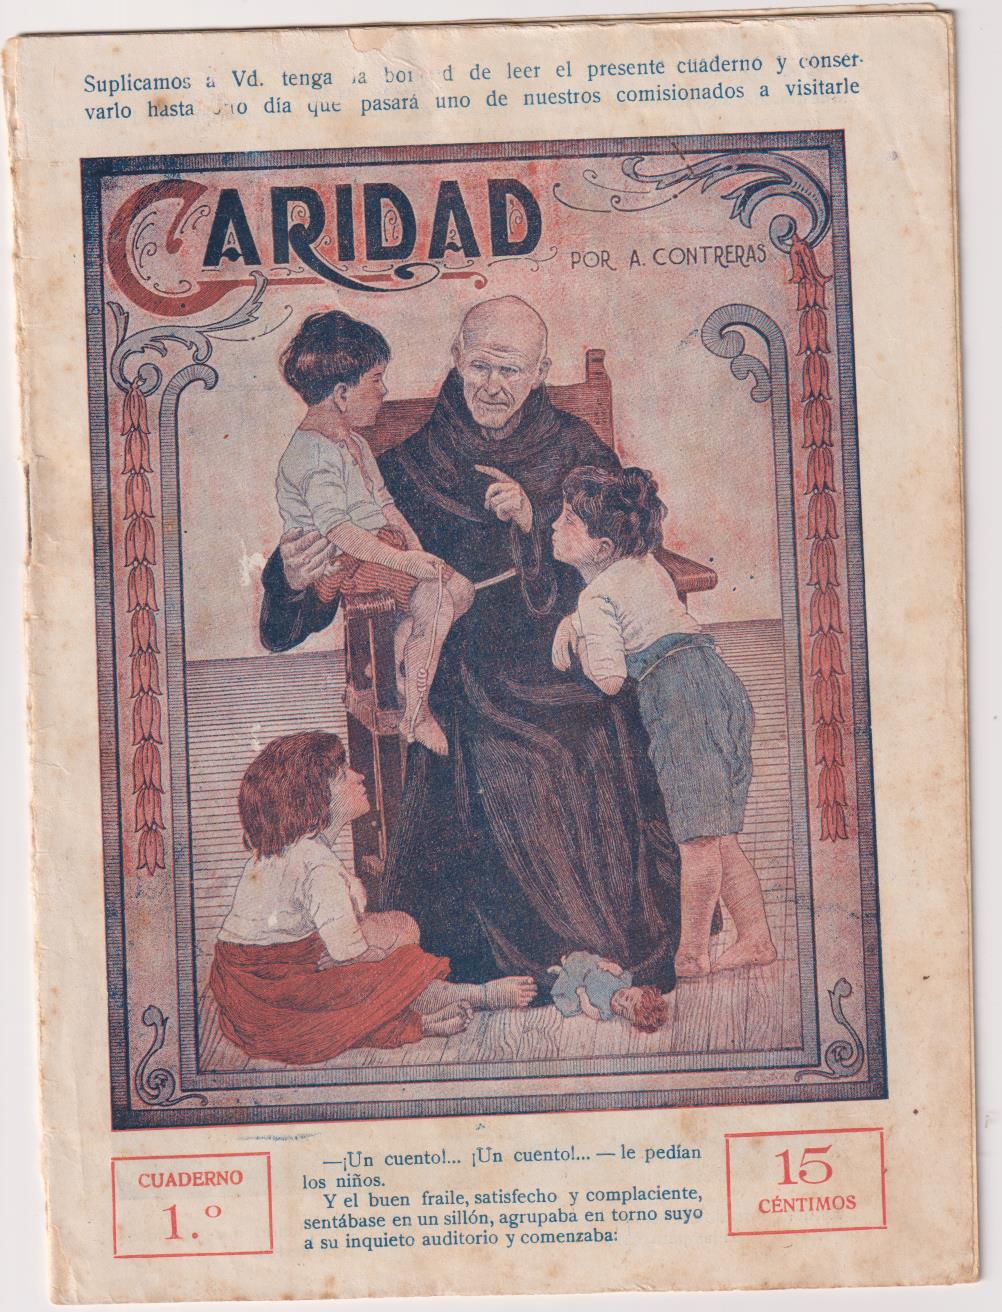 Caridad 1º por A. Contreras. Miguel Albero Editor. Madrid 1926